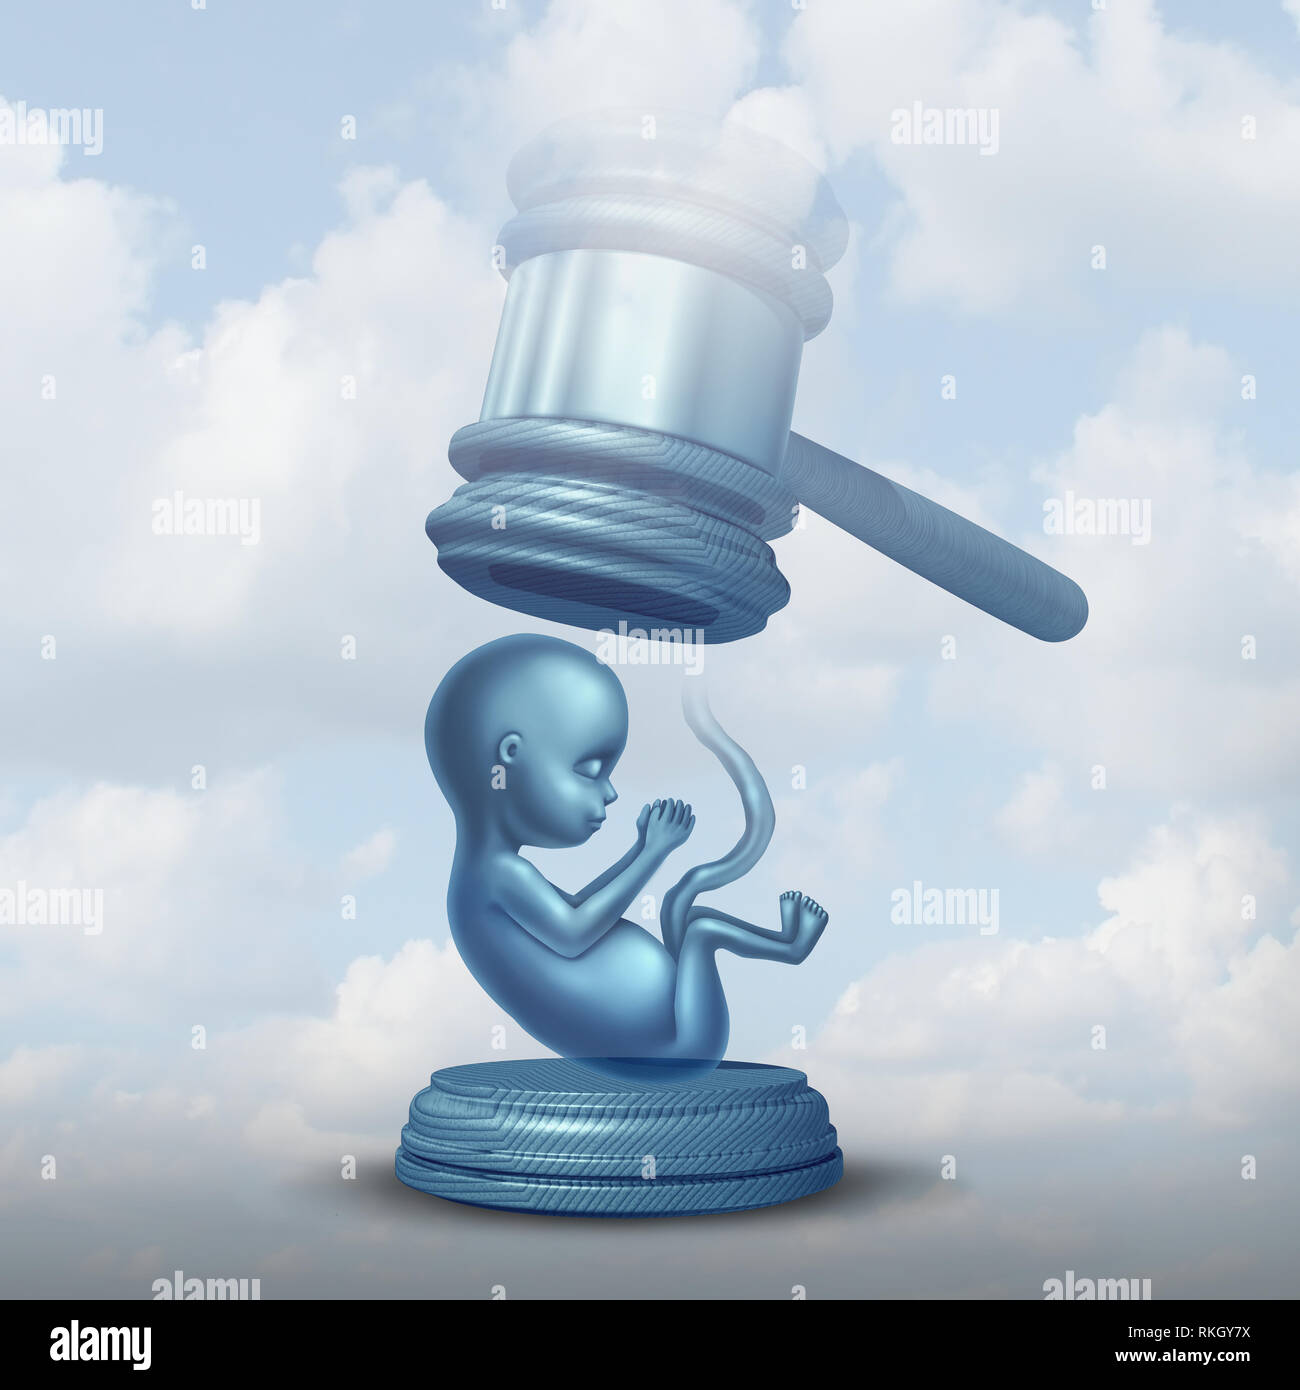 Les lois sur l'avortement et de la législation sur l'enfant à naître comme un foetus avec un juge justice gavel représentant la question sociale et le concept de l'homme. Banque D'Images